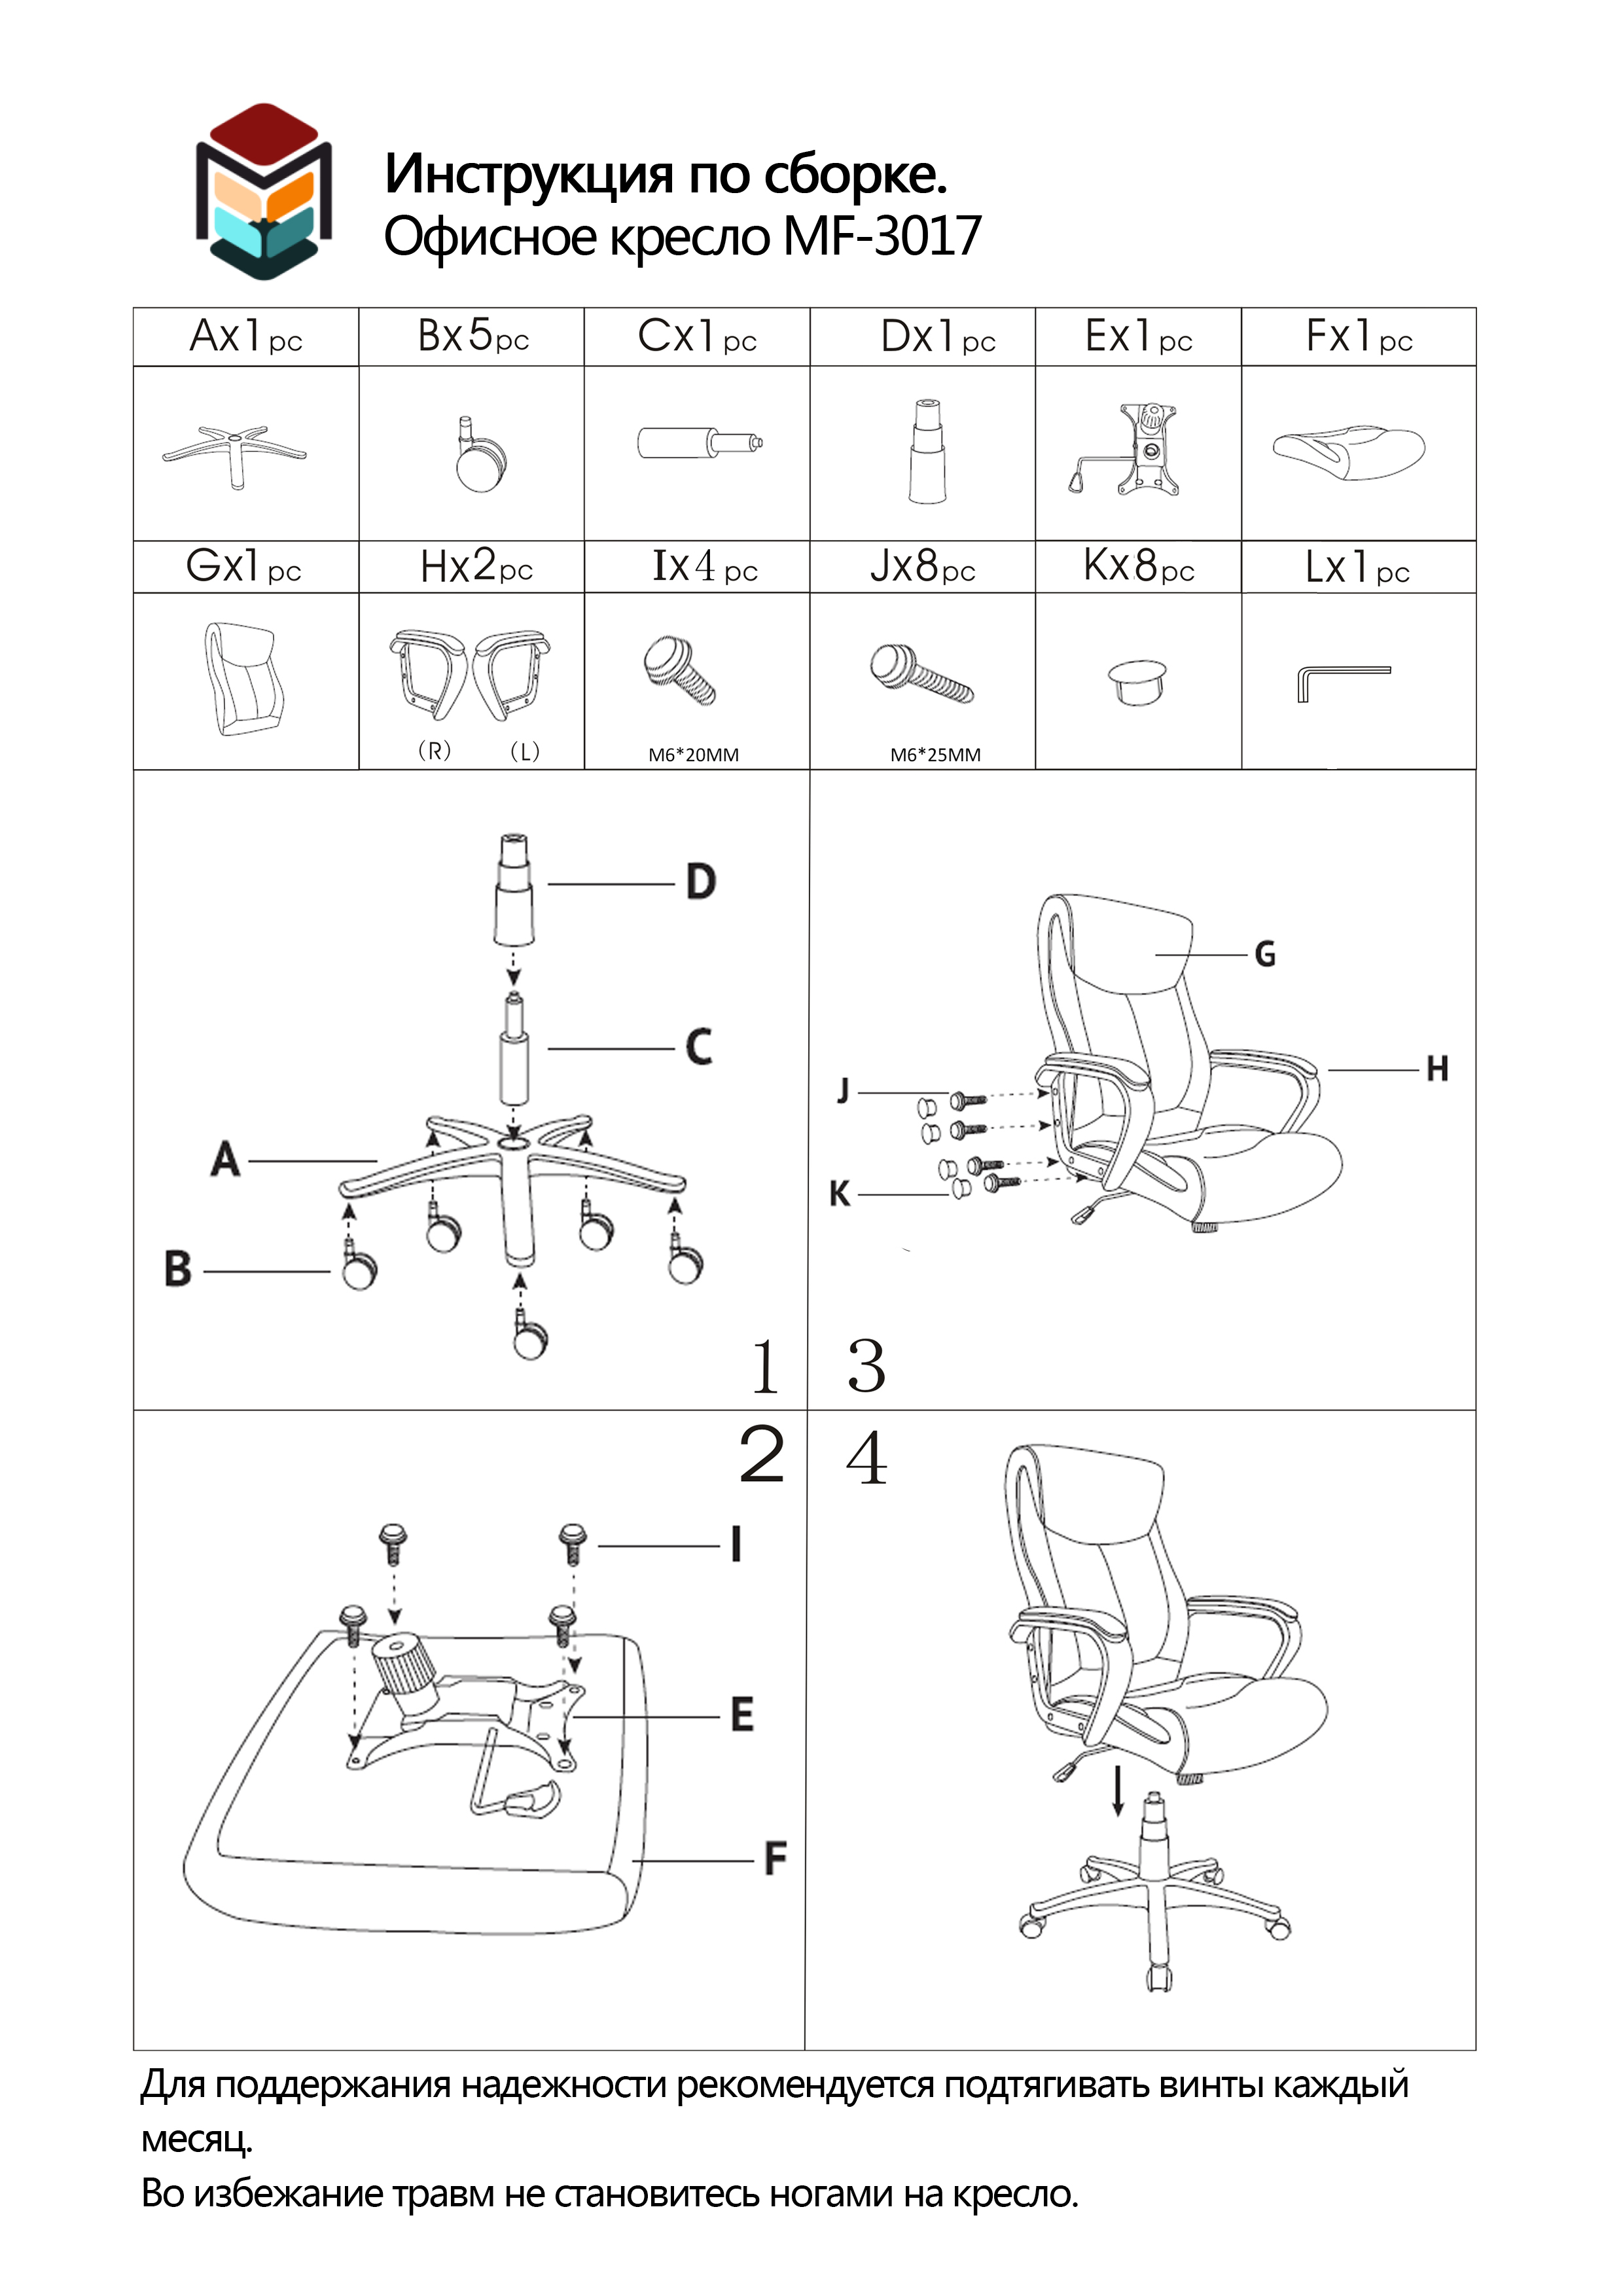 Составные части офисного кресла